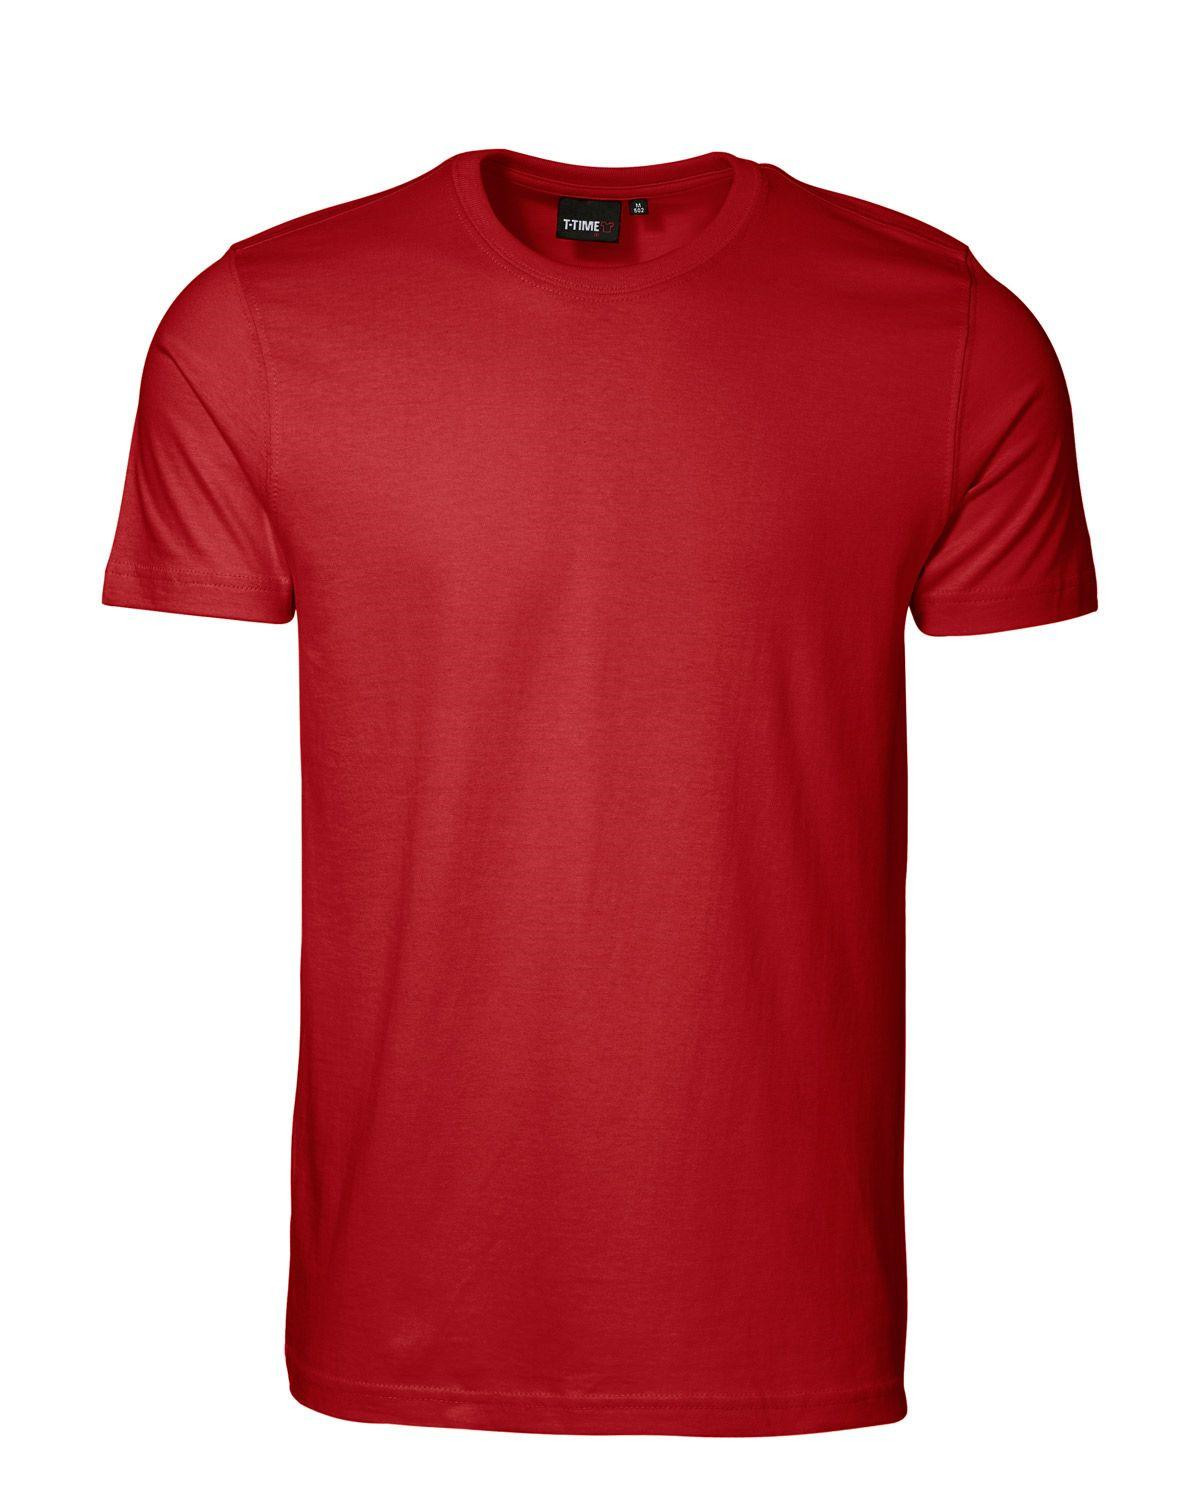 ID T-shirt, Sporty-Fit (Rød, S)